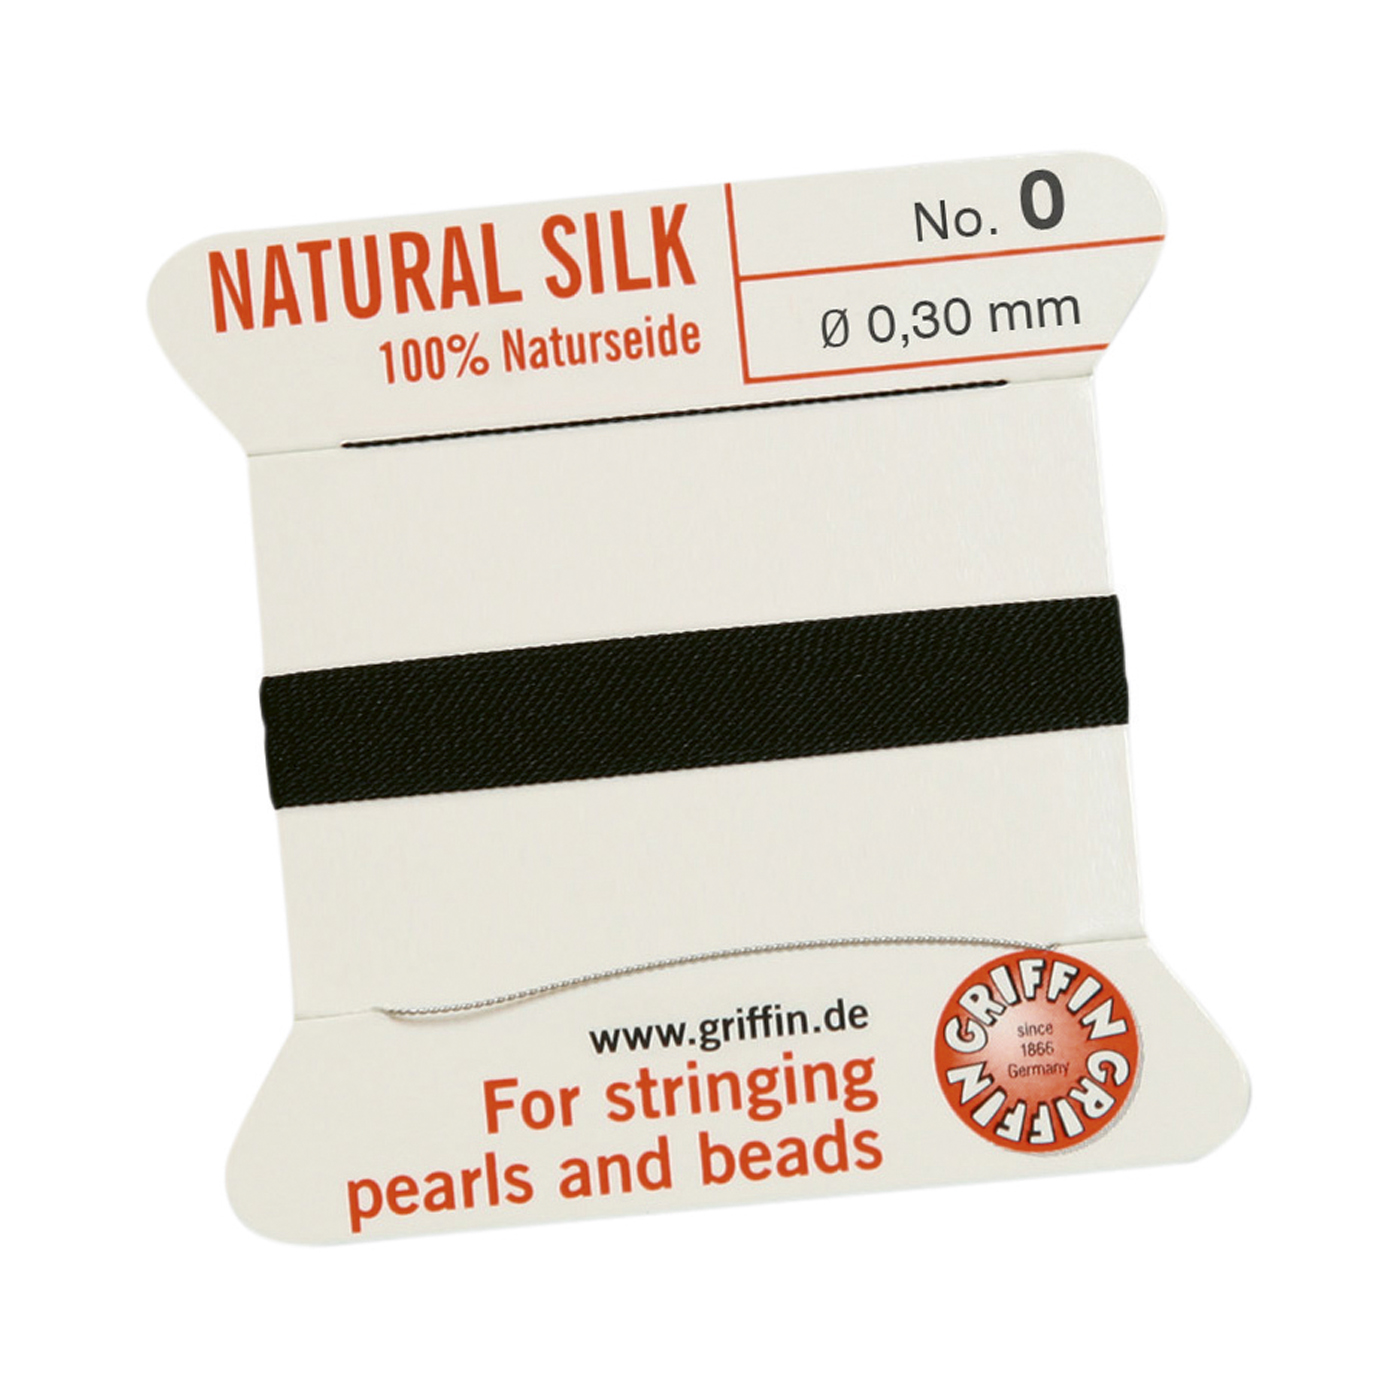 Bead Cord 100% Natural Silk, Black, No. 0 - 2 m